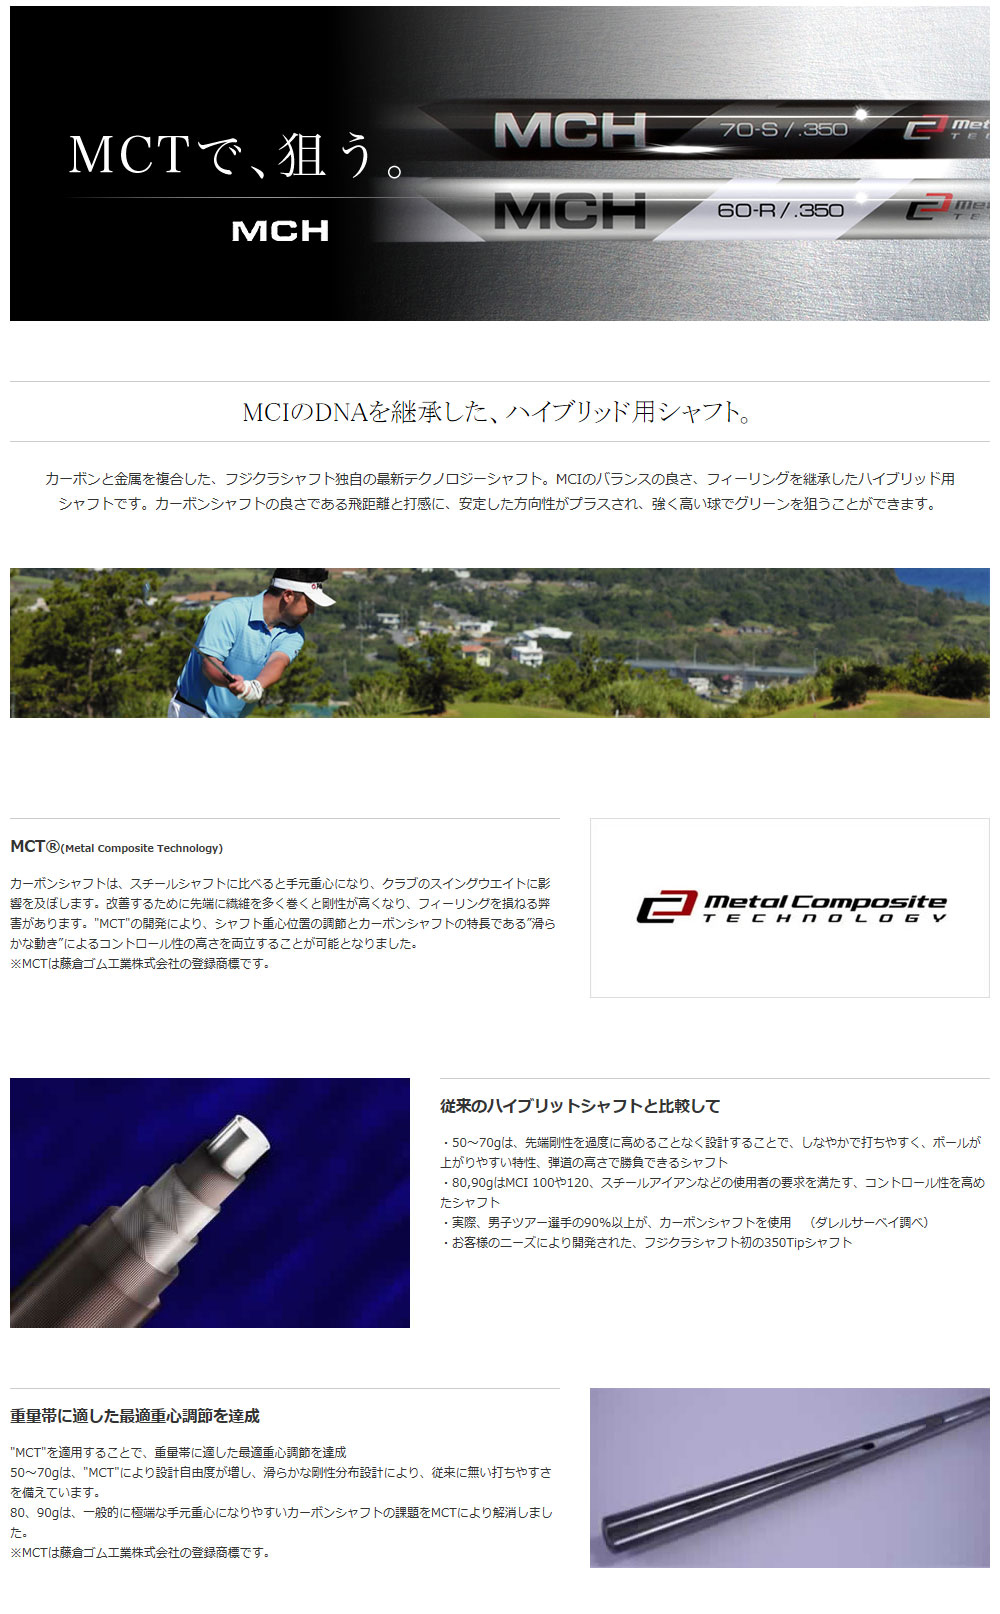 ジオテックゴルフ公式通販サイト / MCH 70